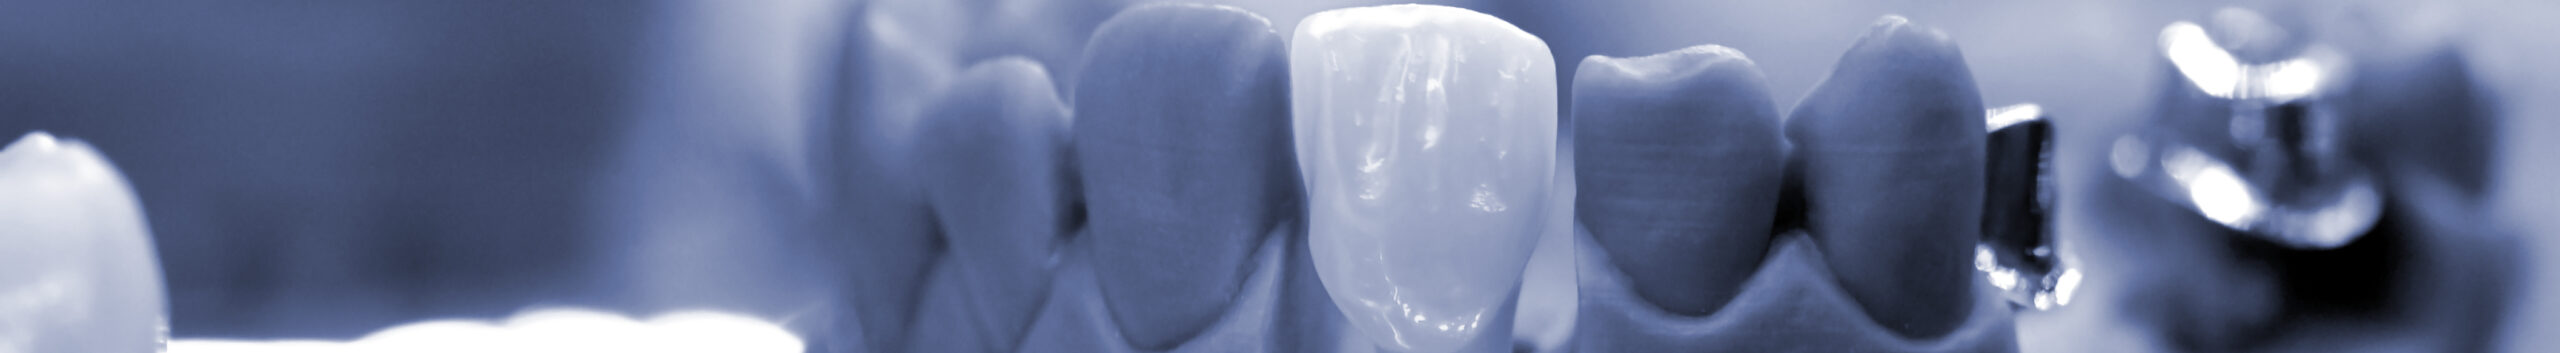 Виды хирургического лечения кисты зуба